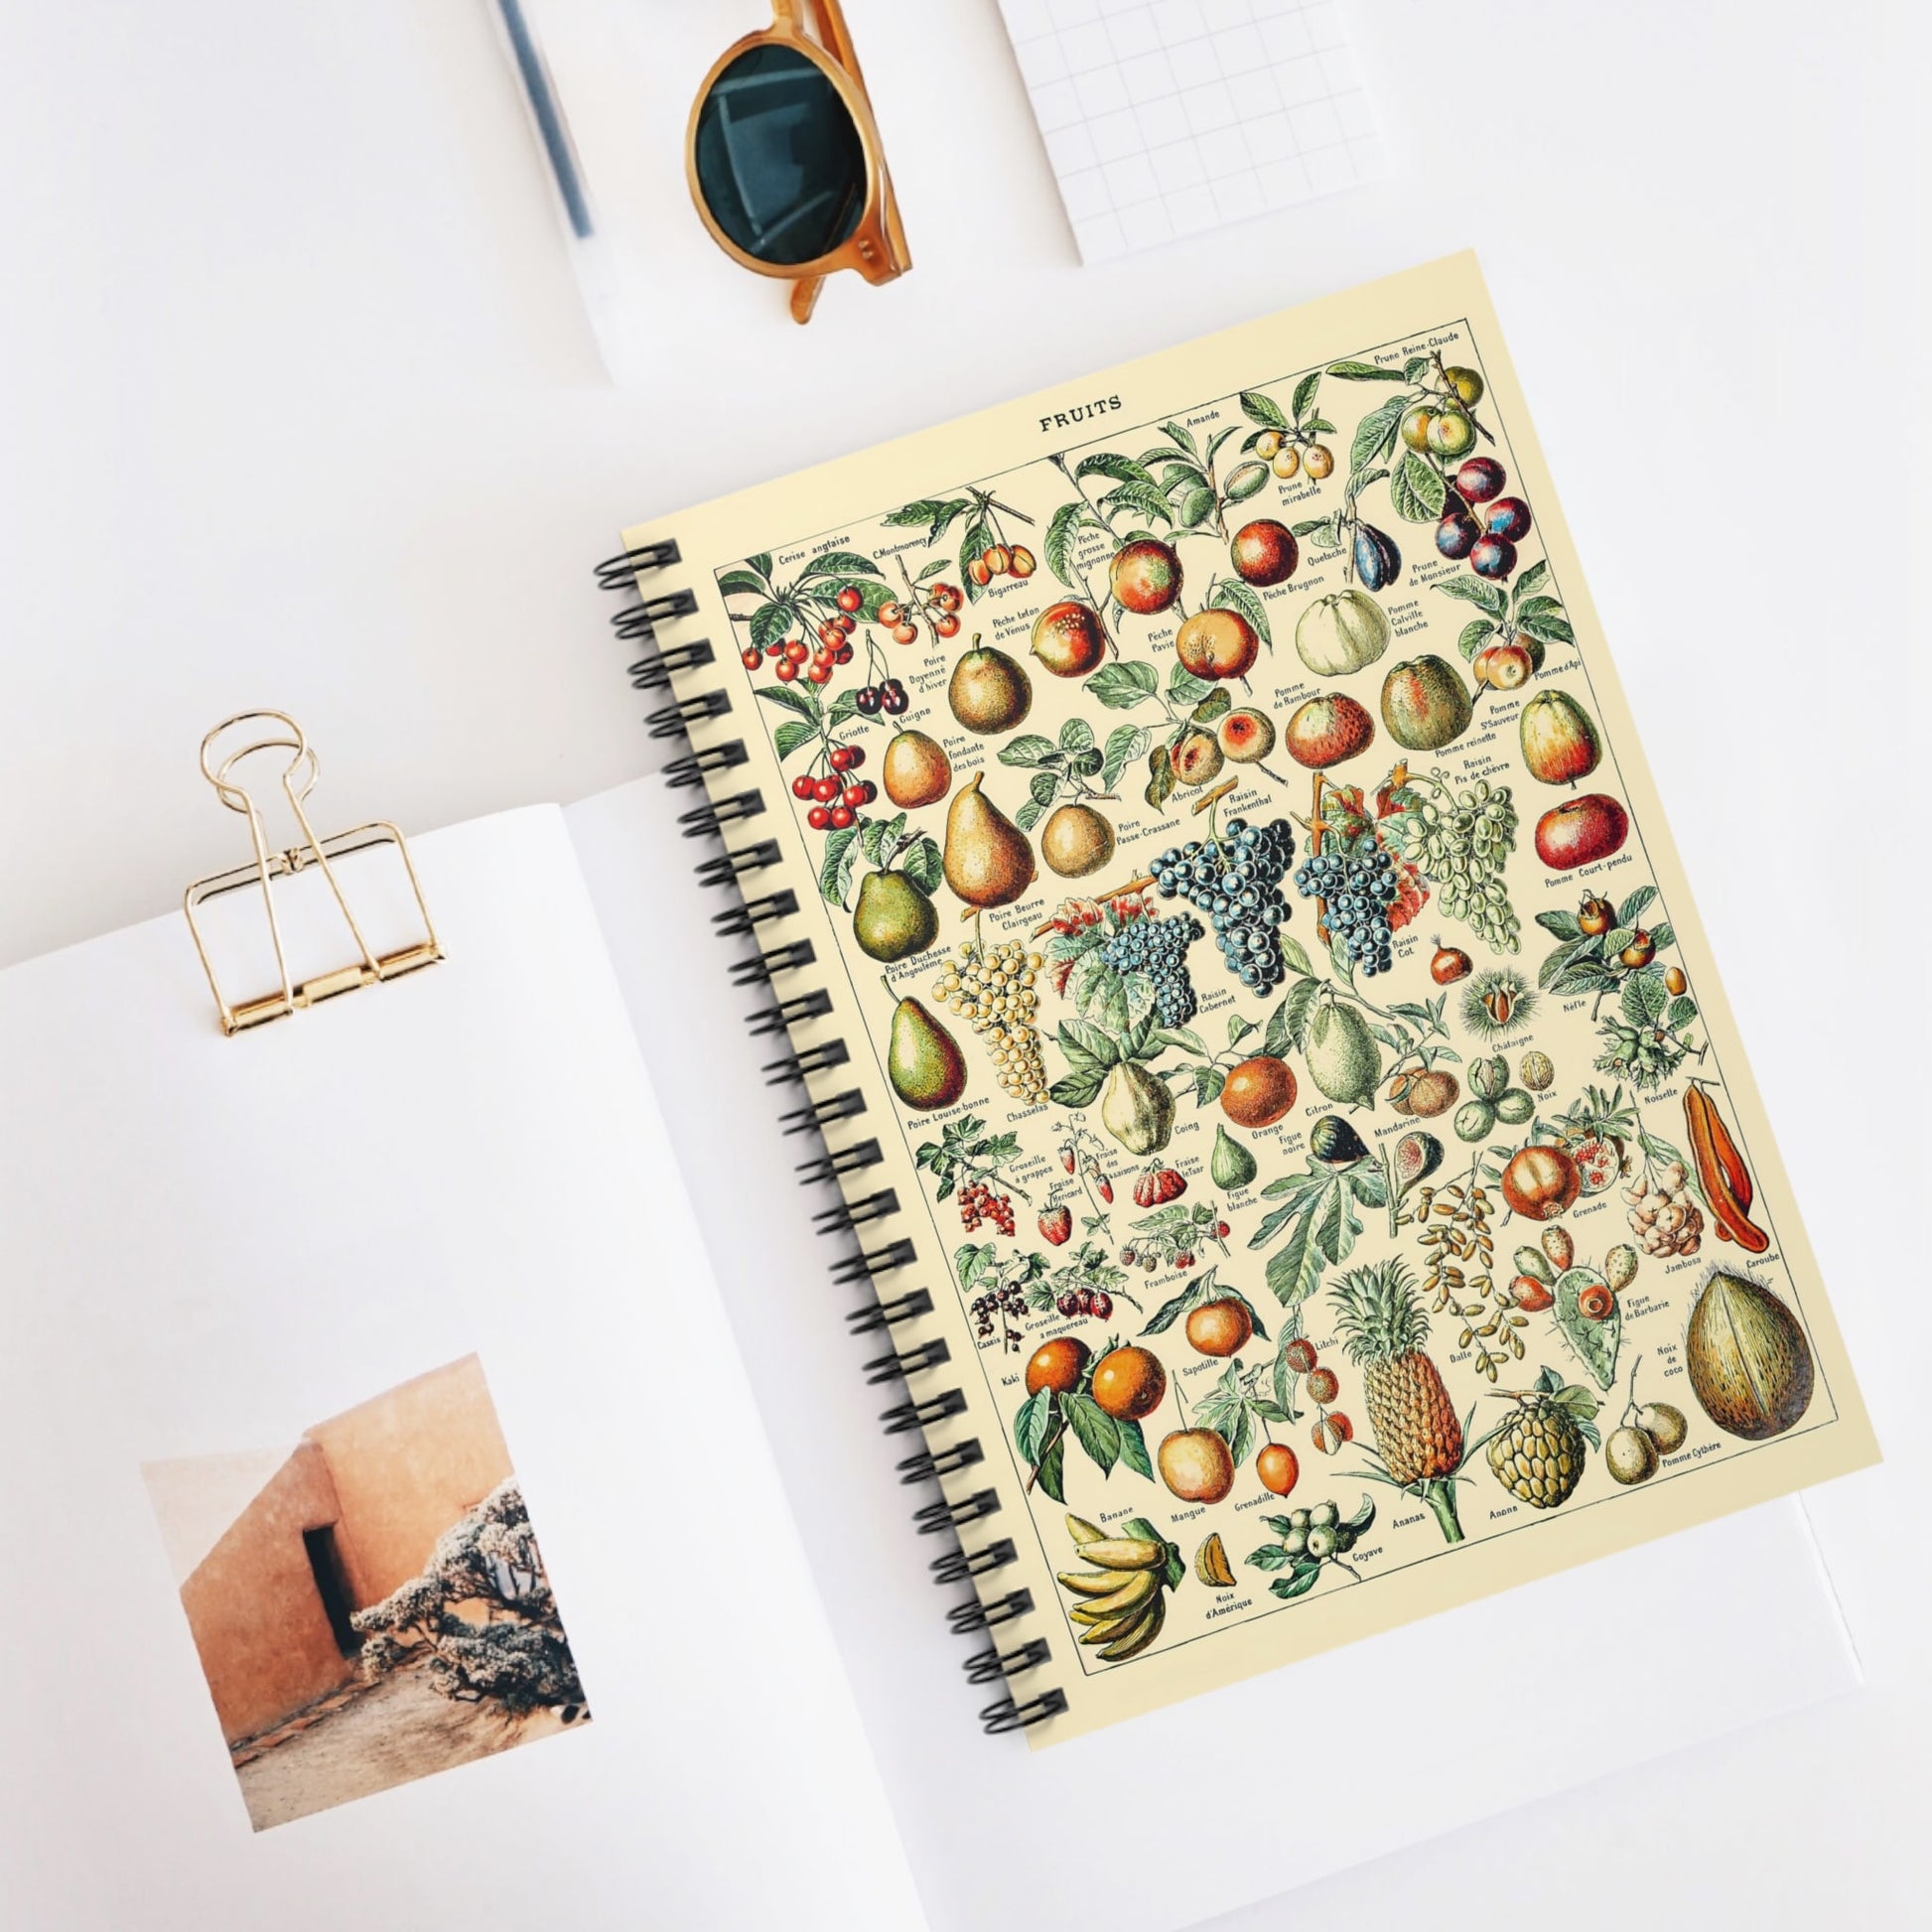 Fruit Diagram Spiral Notebook Displayed on Desk